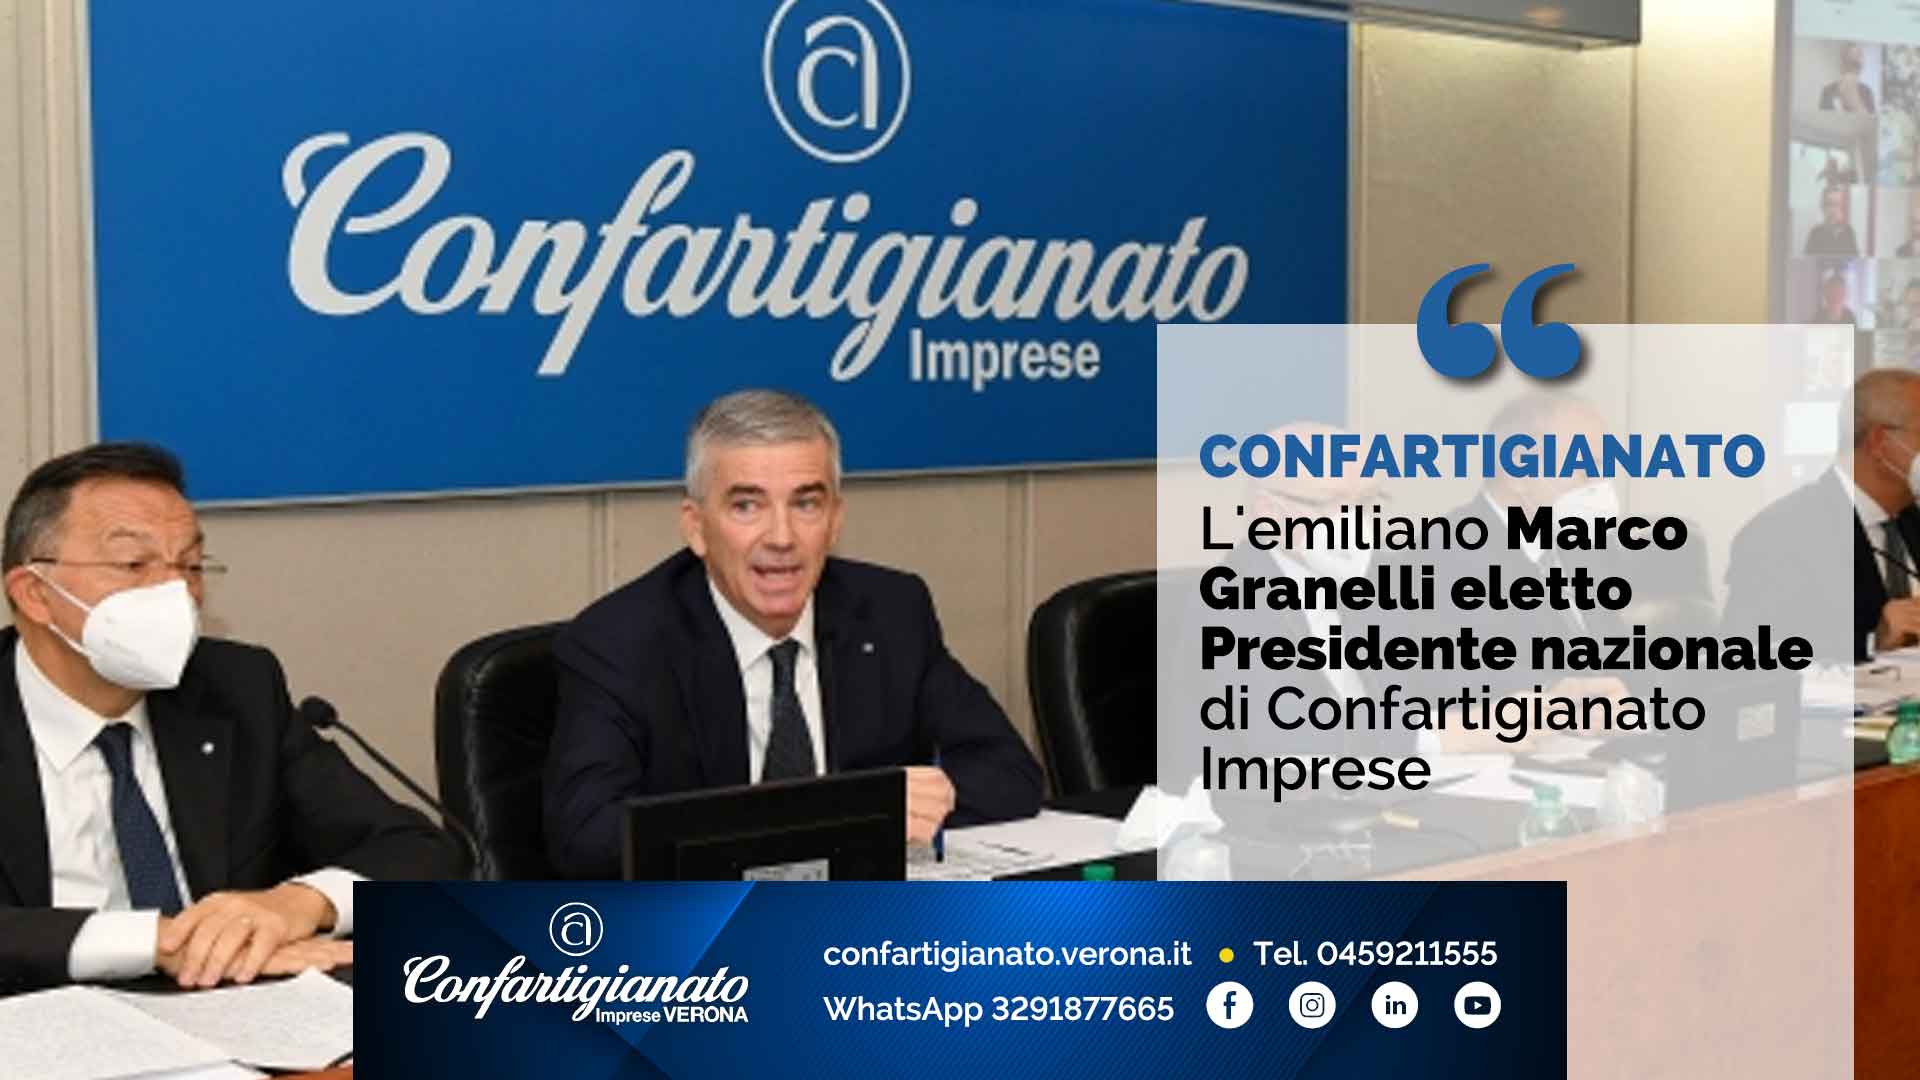 CONFARTIGIANATO – L'emiliano Marco Granelli eletto Presidente nazionale di Confartigianato Imprese